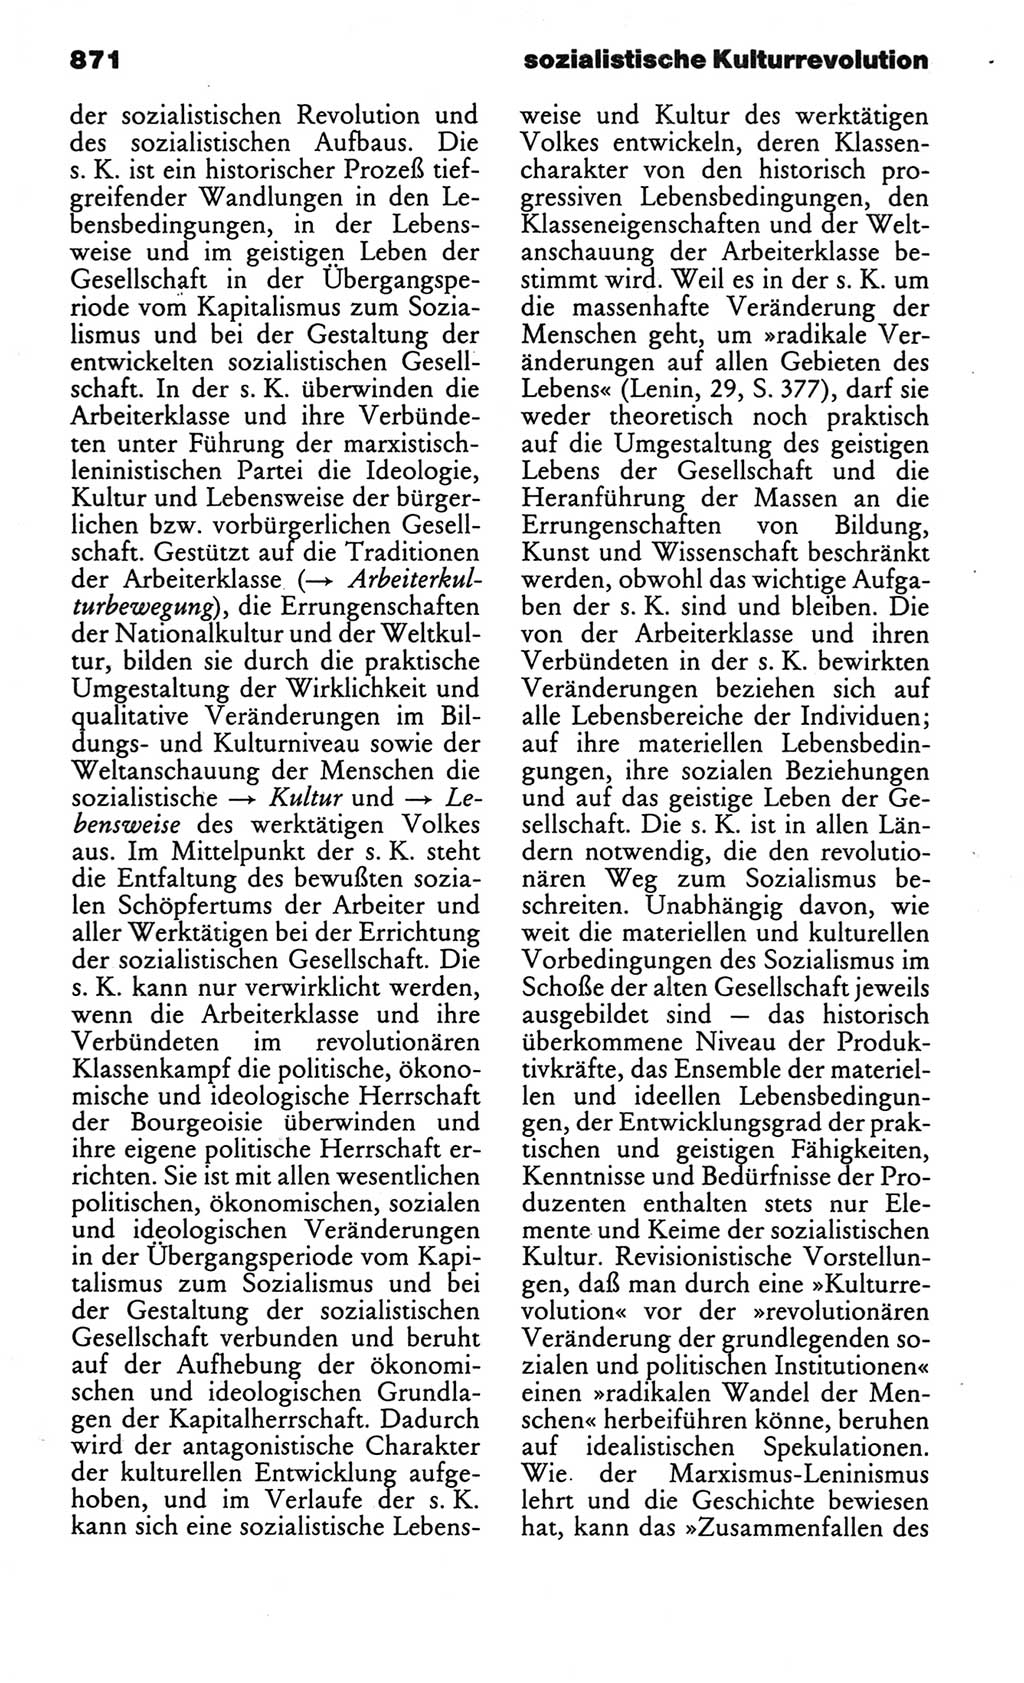 Kleines politisches Wörterbuch [Deutsche Demokratische Republik (DDR)] 1986, Seite 871 (Kl. pol. Wb. DDR 1986, S. 871)